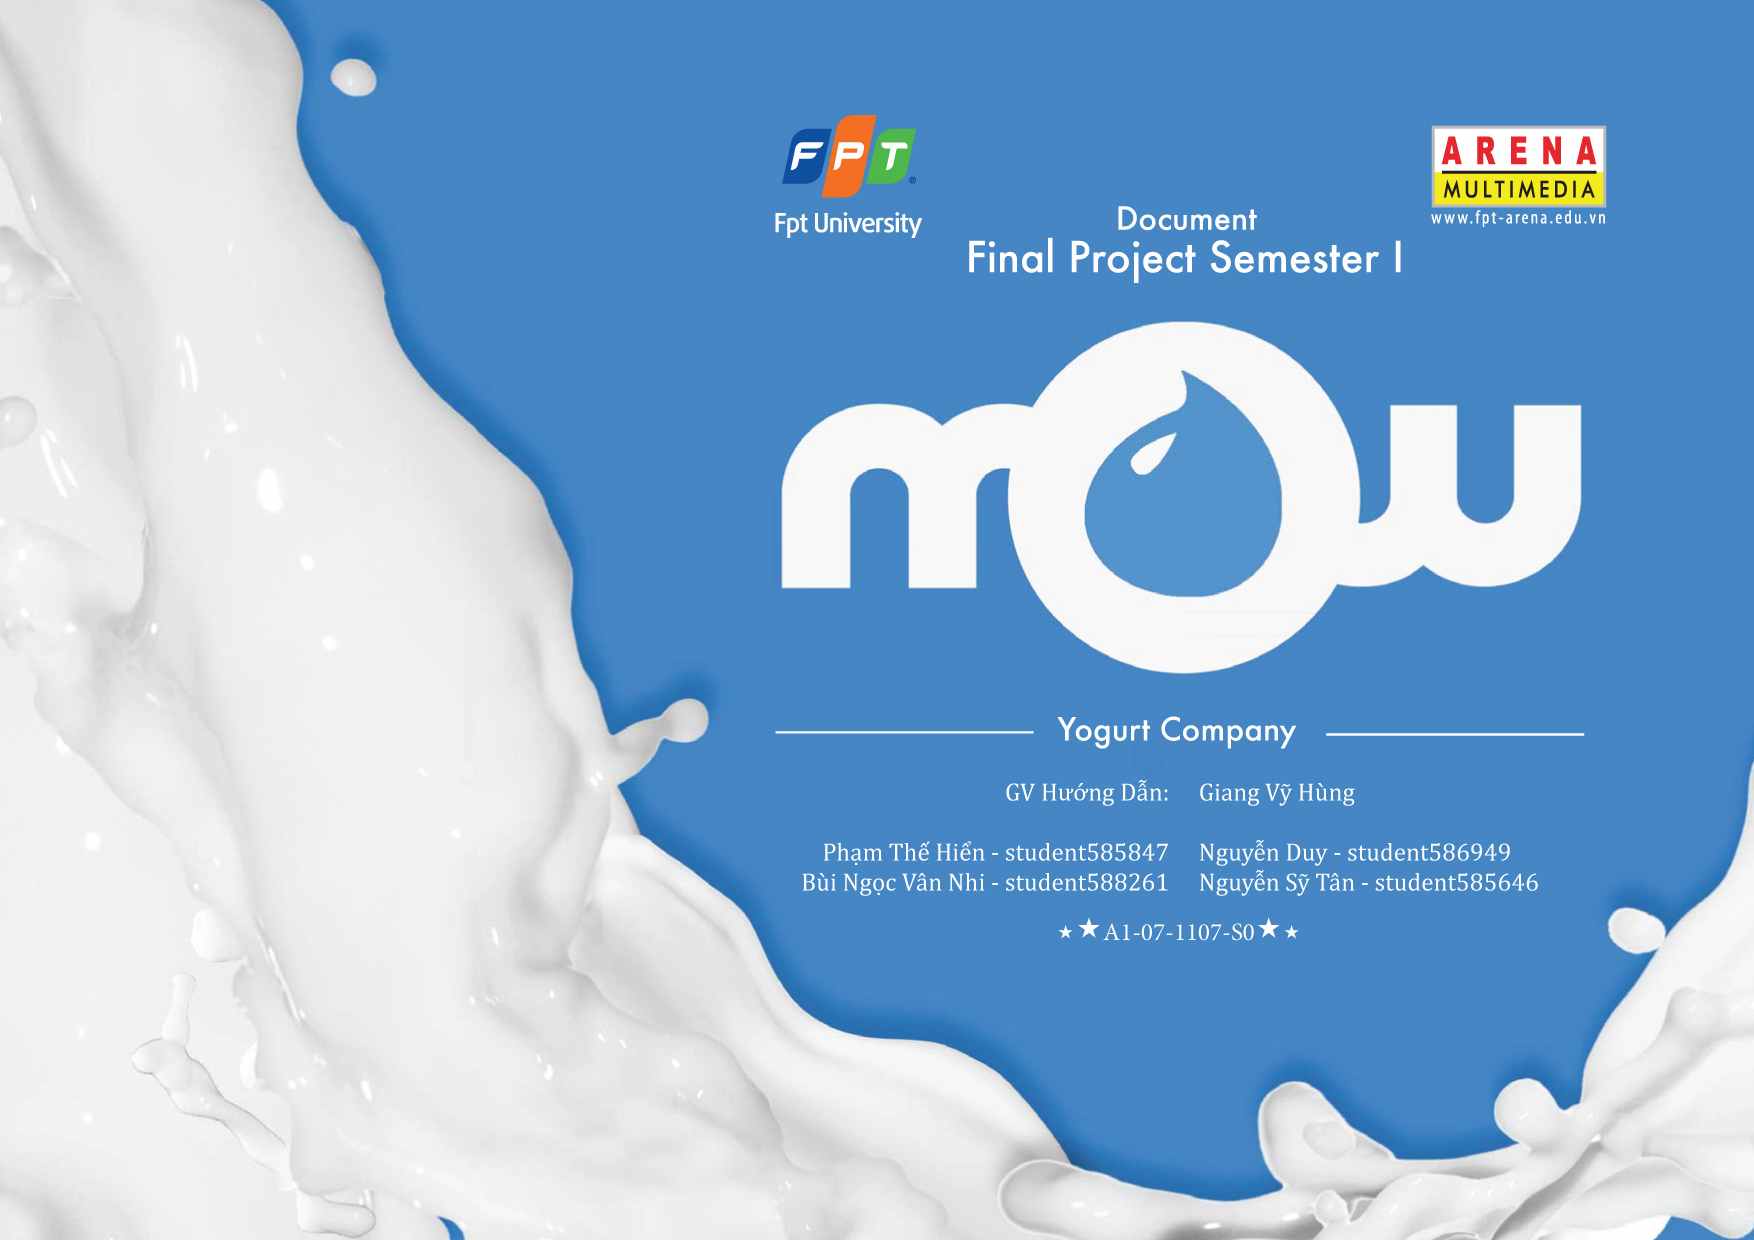 Yogurt Company Mow -1107S0